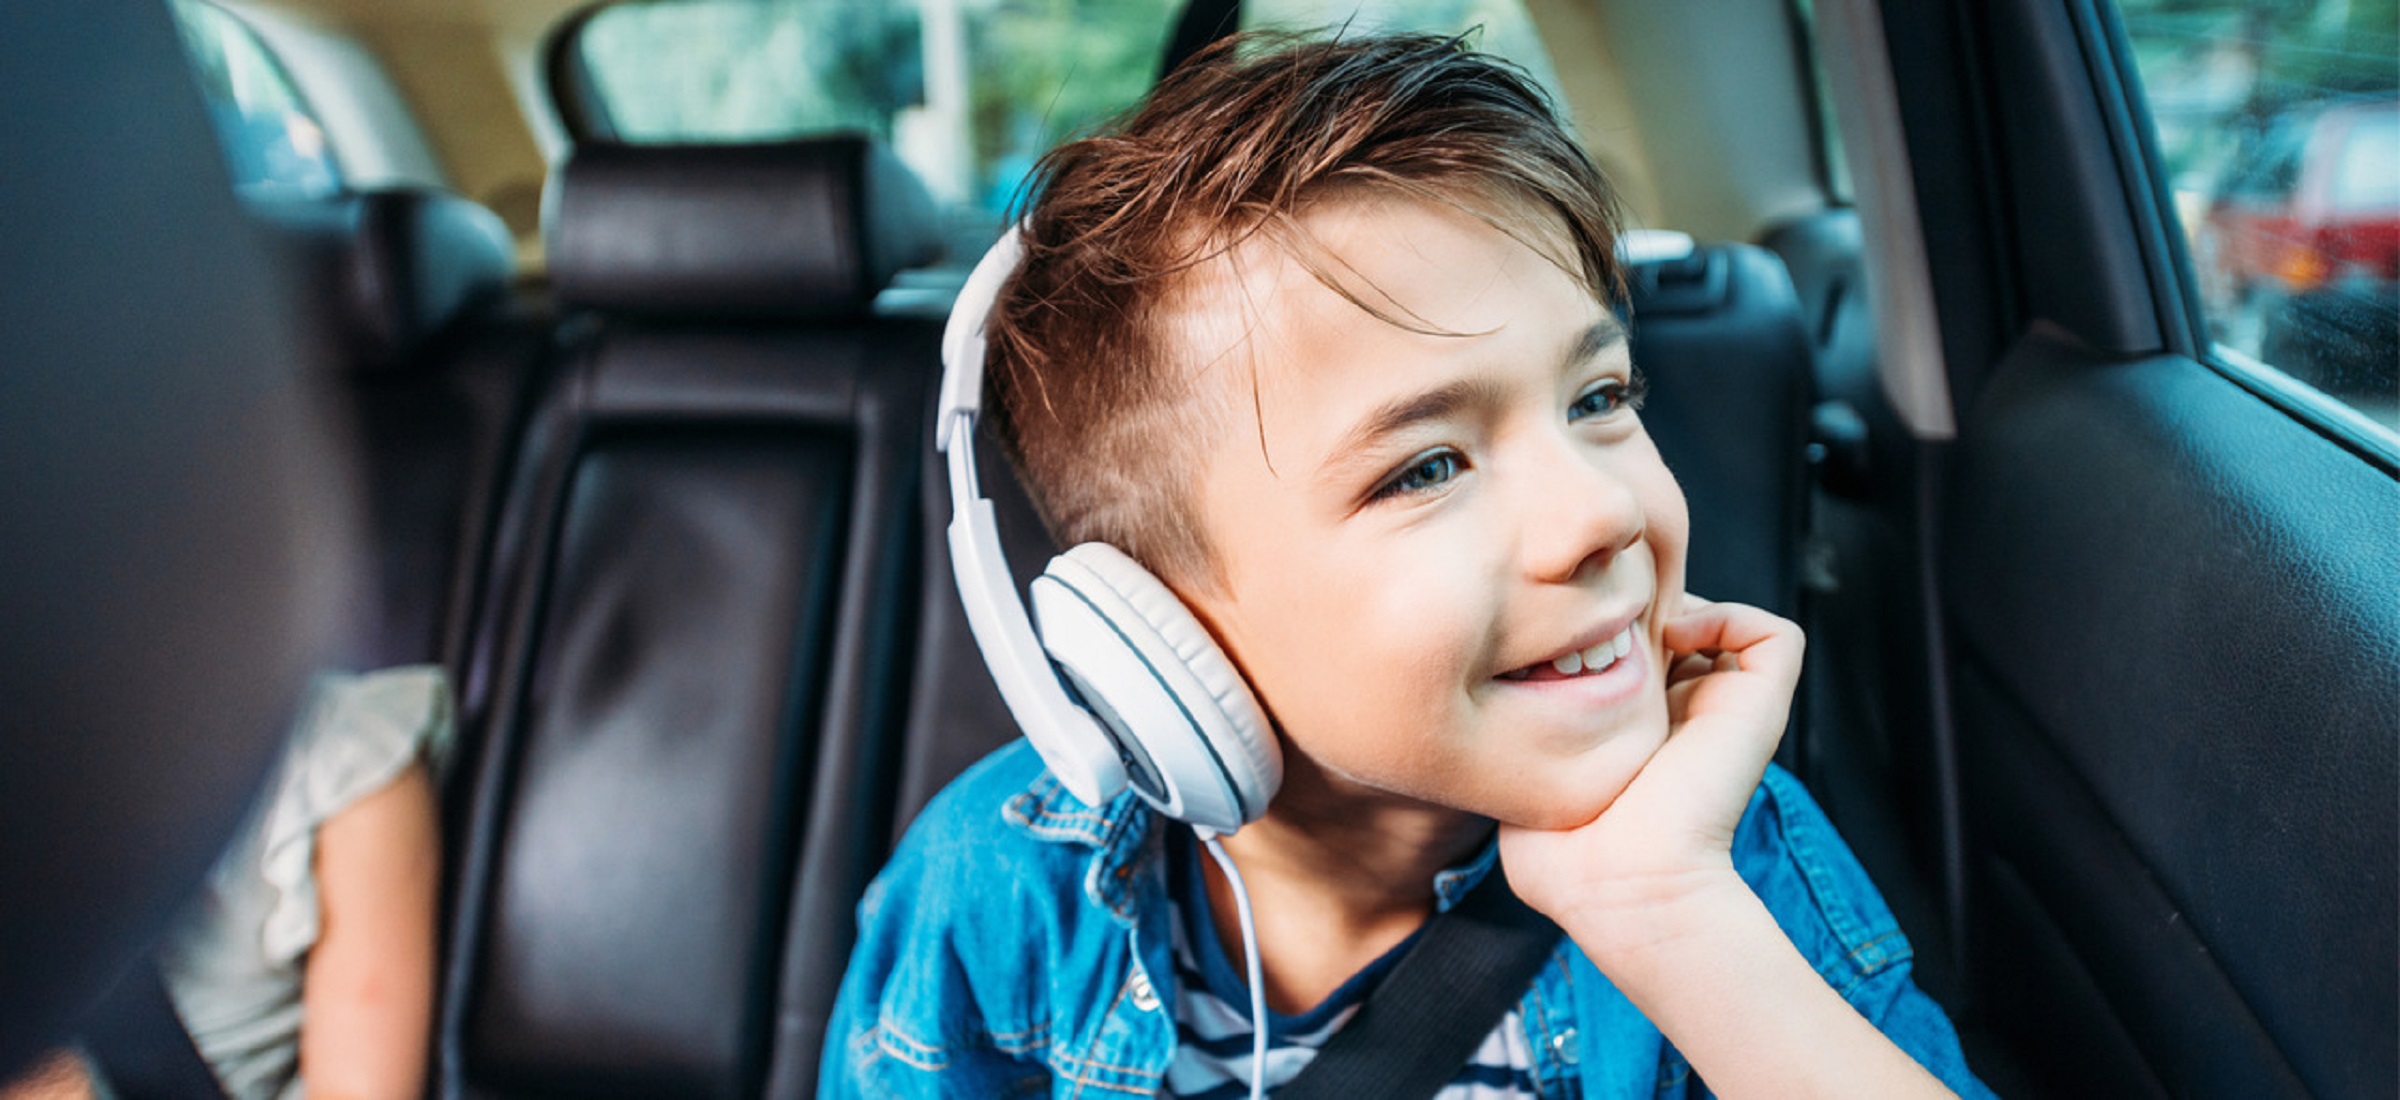 Песня мальчик на машине. Ребенок в наушниках в машине. Машина для детей. Дети поют в машине. Мальчик слушает музыку фото.